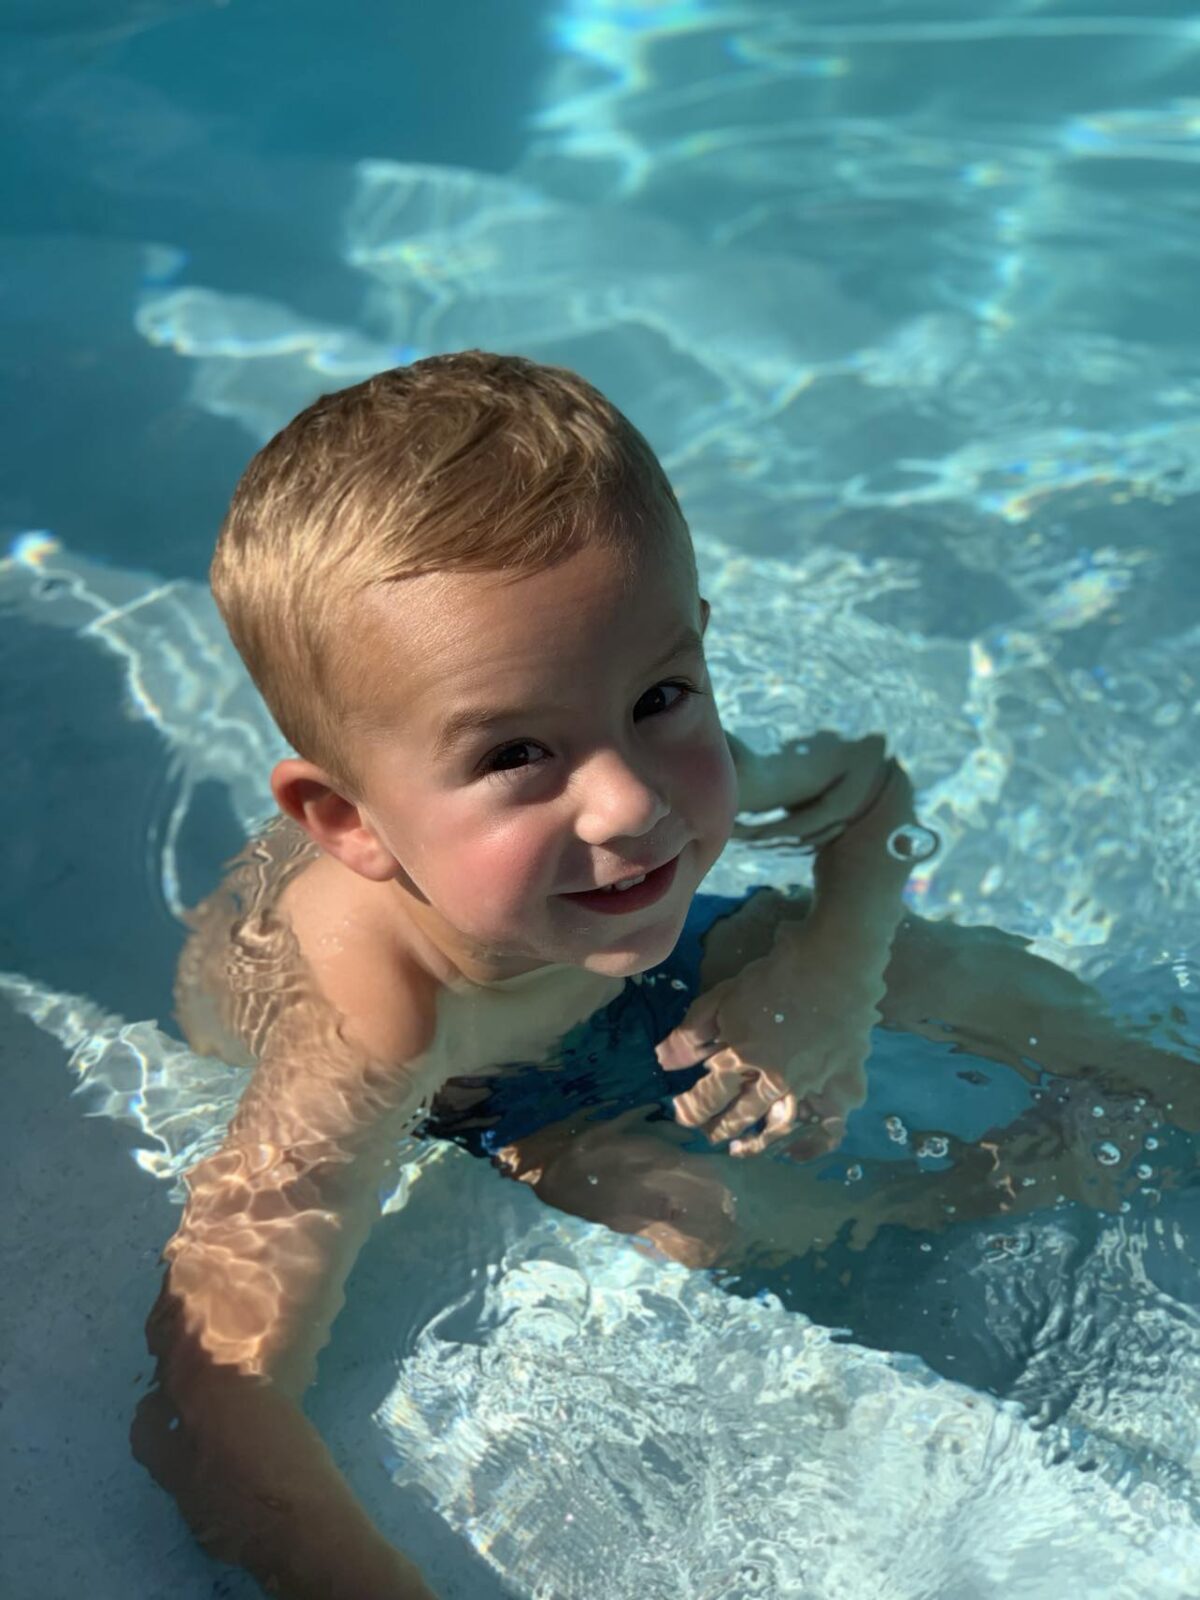 Bé Max, hiện 6 tuổi, đã sống sót sau một tai nạn đuối nước suýt mất mạng vào năm 2019. Cậu bé nói rằng Chúa Jesus đã ôm cậu trong hồ bơi vào ngày hôm đó. (Ảnh: Đăng dưới sự cho phép của cô Courtney McKee)